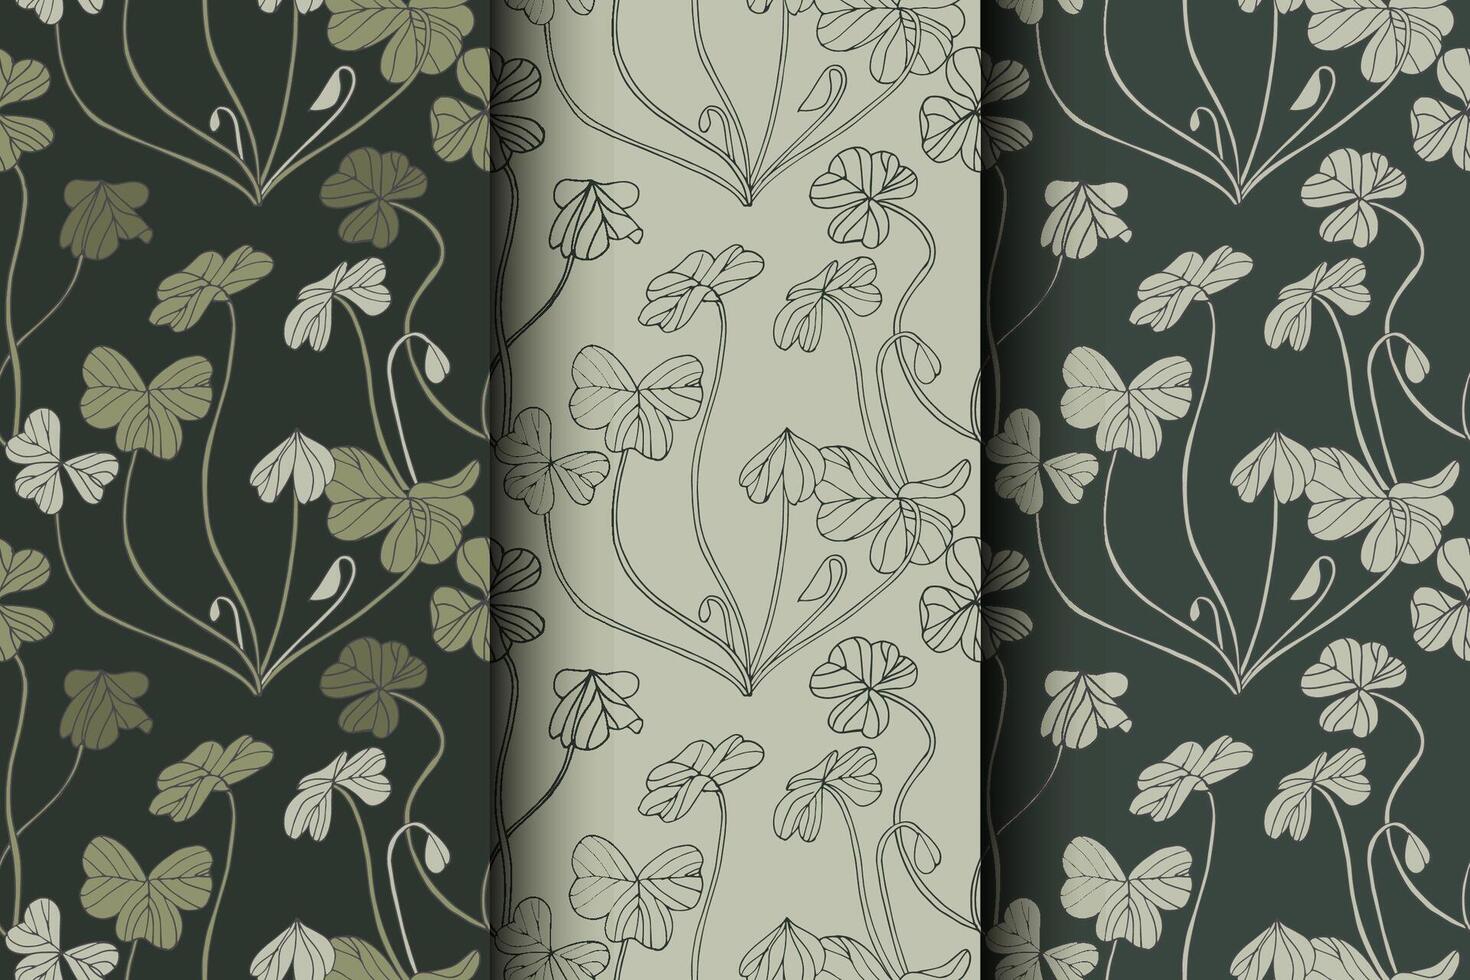 Vektor Illustration einstellen von botanisch Kleeblatt nahtlos Muster. Blumen Hintergrund zum Kosmetika Verpackung